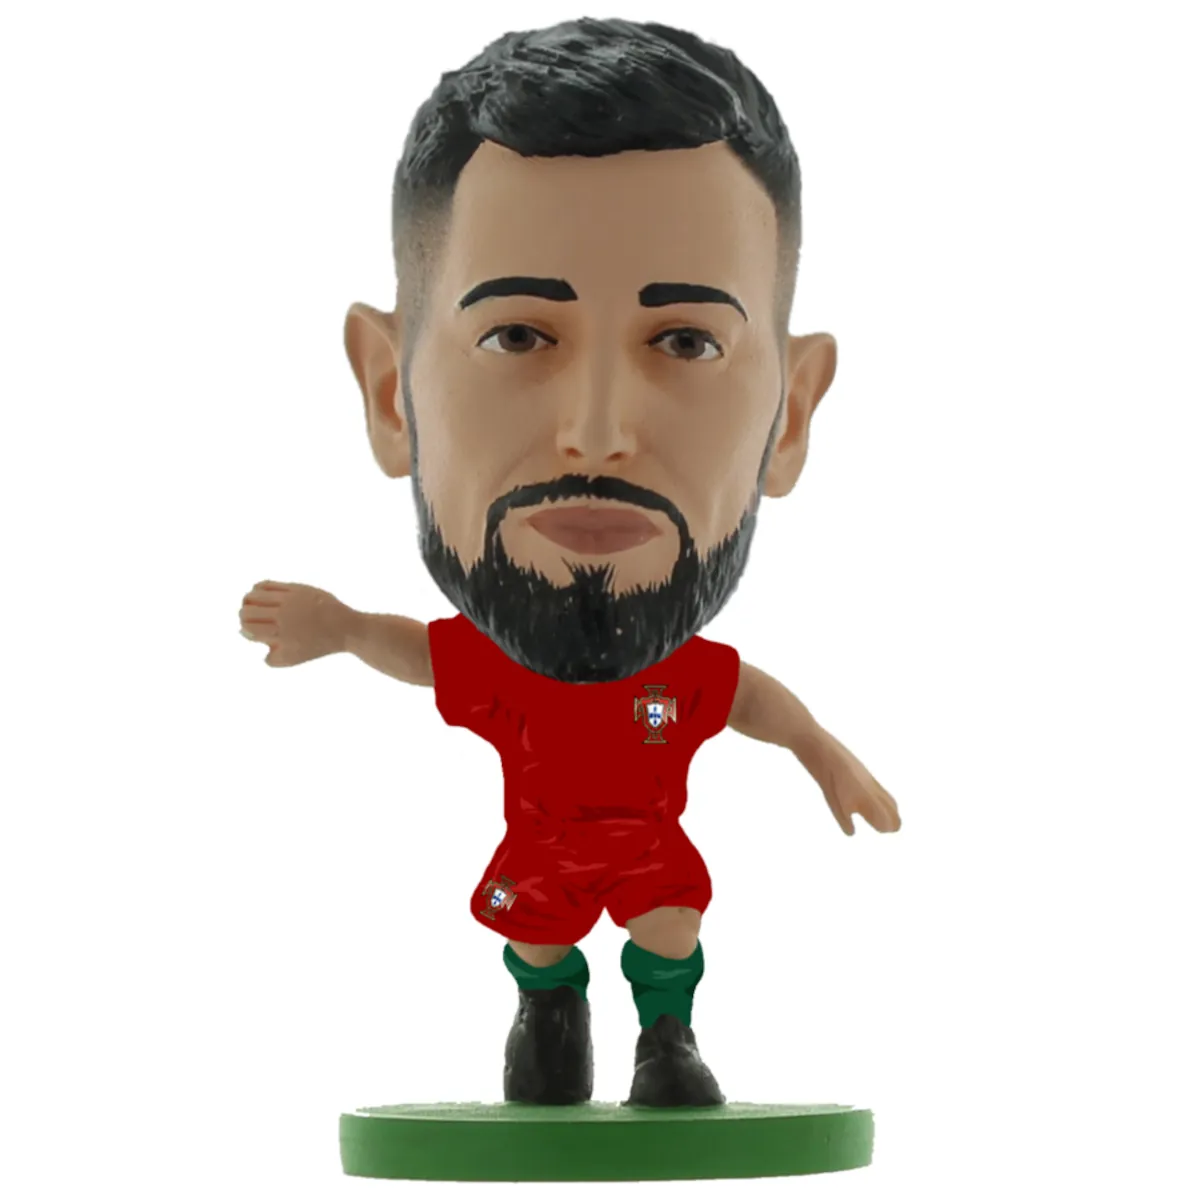 174925 Portugal SoccerStarz Collectable Figure - Bruno Fernandes